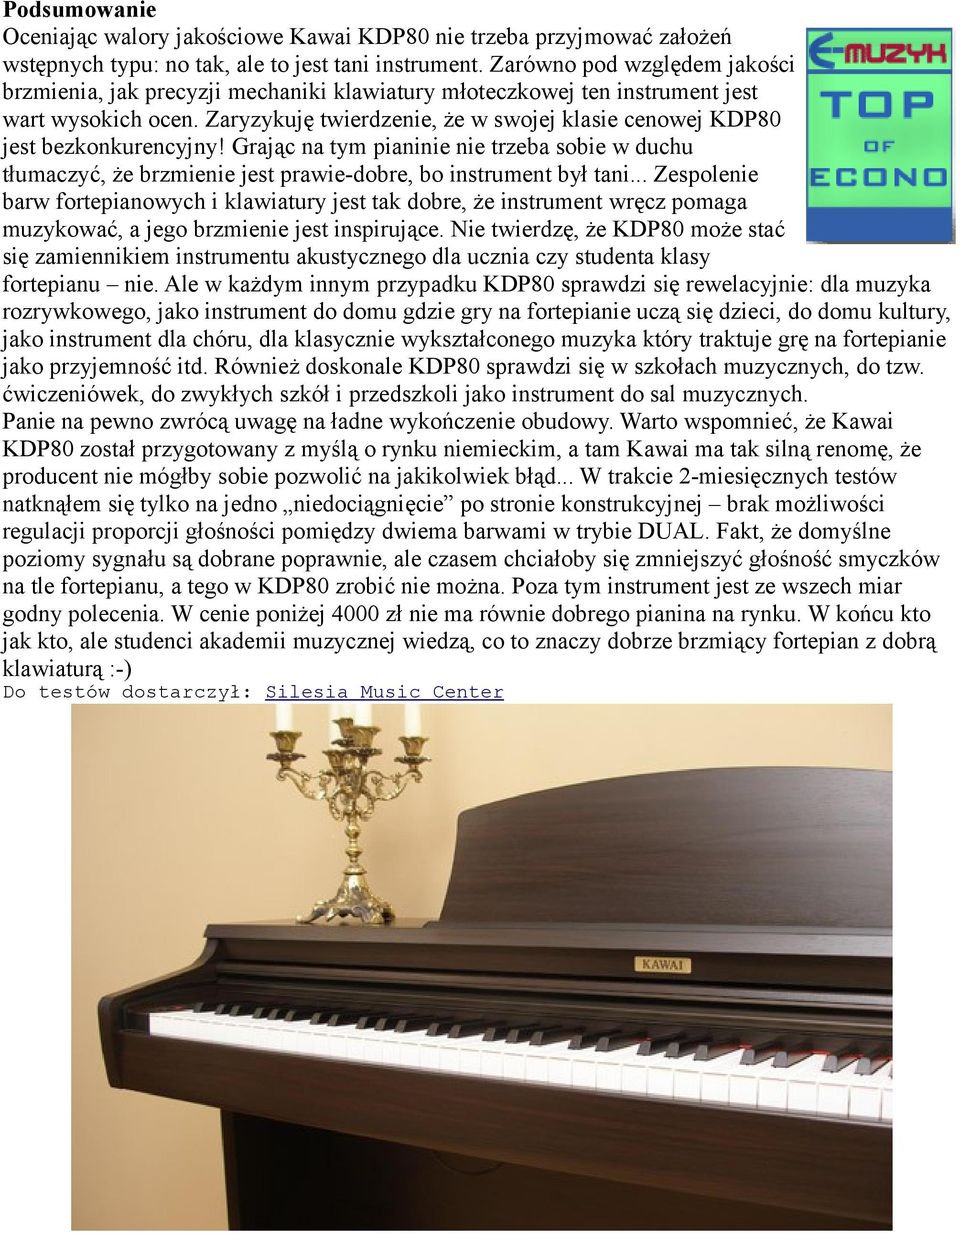 Zaryzykuję twierdzenie, że w swojej klasie cenowej KDP80 jest bezkonkurencyjny! Grając na tym pianinie nie trzeba sobie w duchu tłumaczyć, że brzmienie jest prawie-dobre, bo instrument był tani.